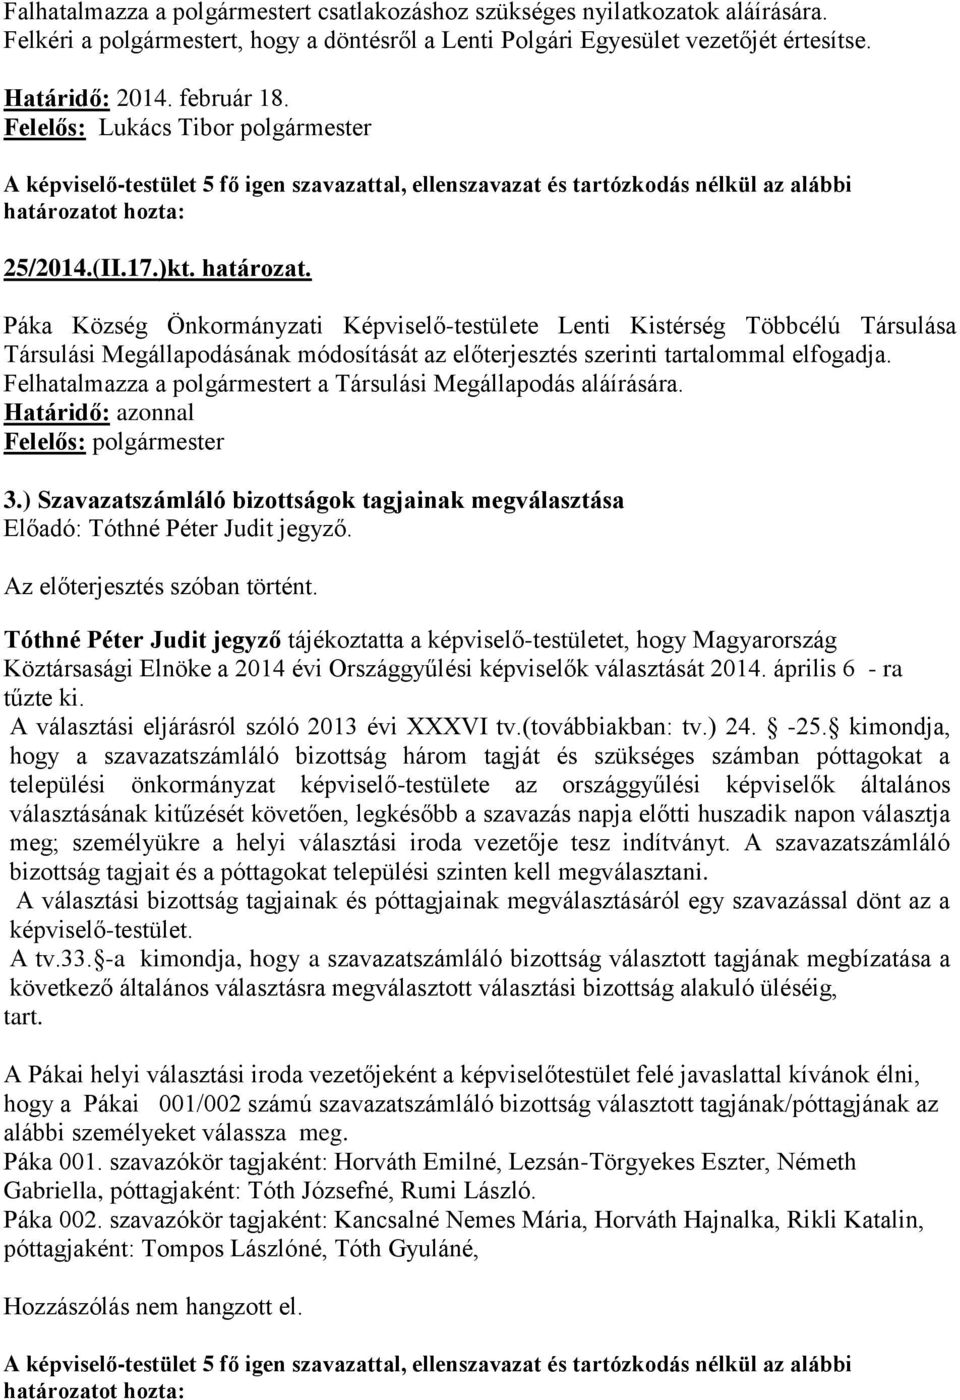 Páka Község Önkormányzati Képviselő-testülete Lenti Kistérség Többcélú Társulása Társulási Megállapodásának módosítását az előterjesztés szerinti tartalommal elfogadja.